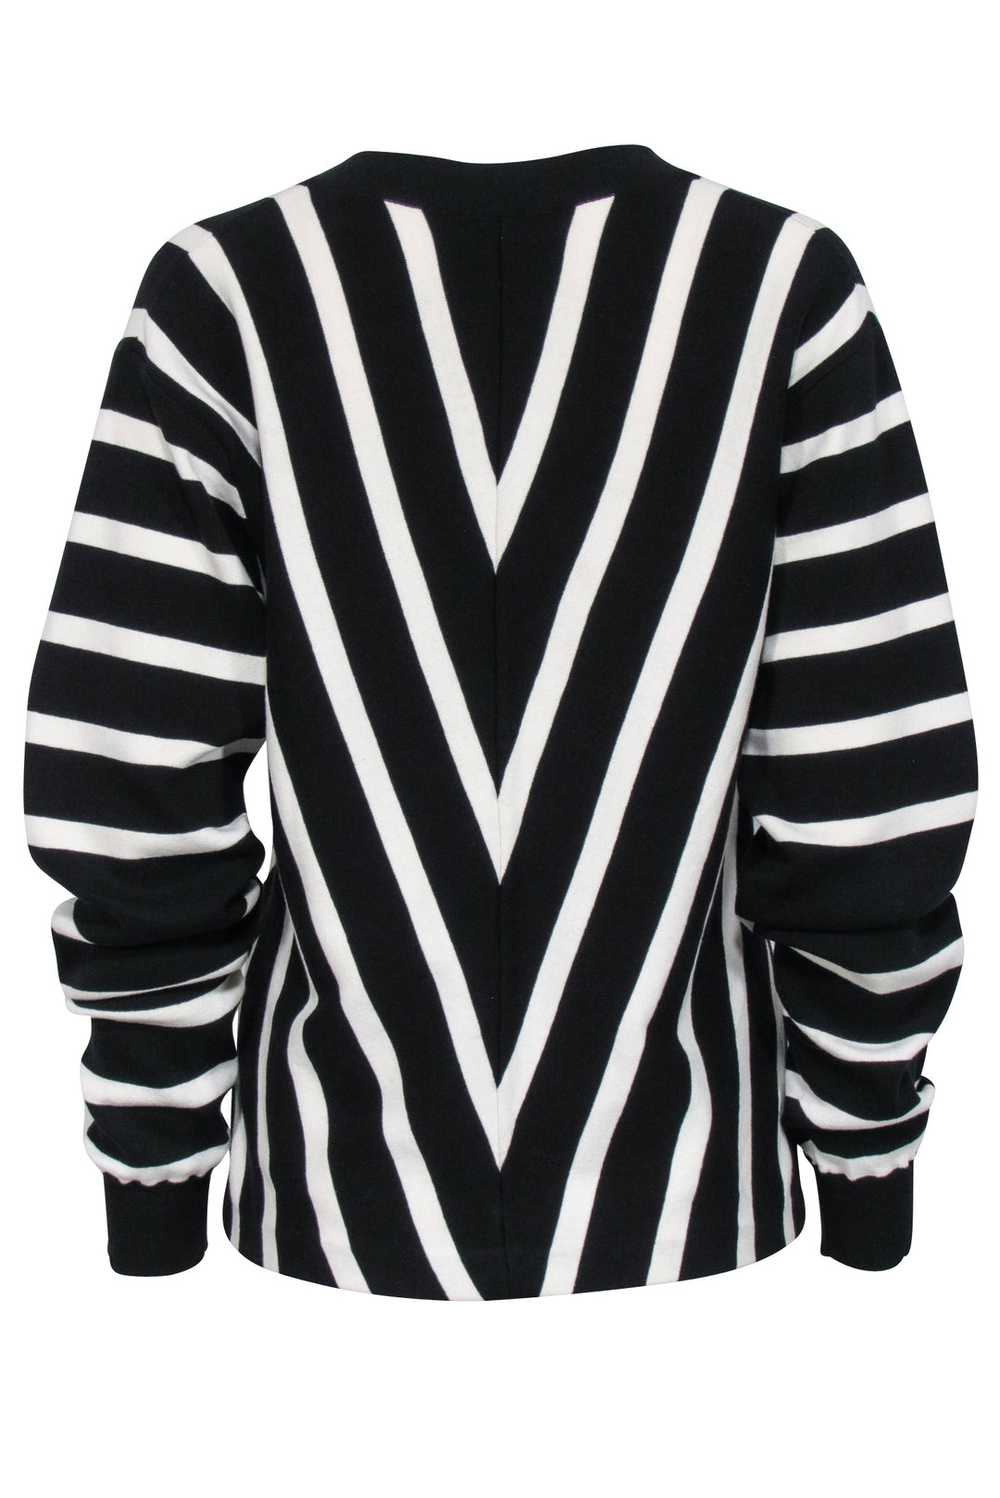 Chloe - Black & White Striped Cotton Sweater Sz L - image 3